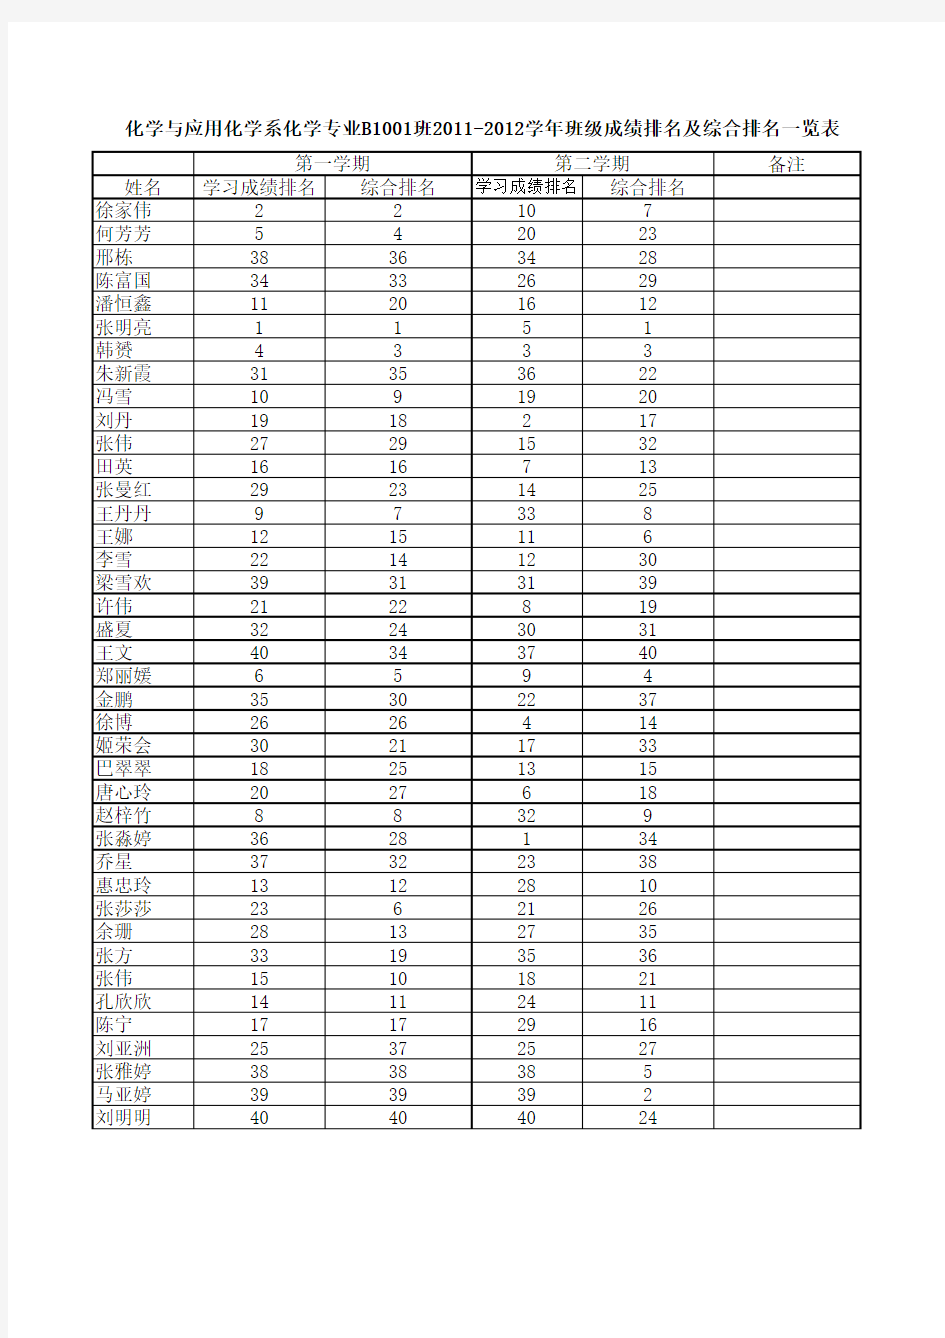 综合成绩排名表(模板)